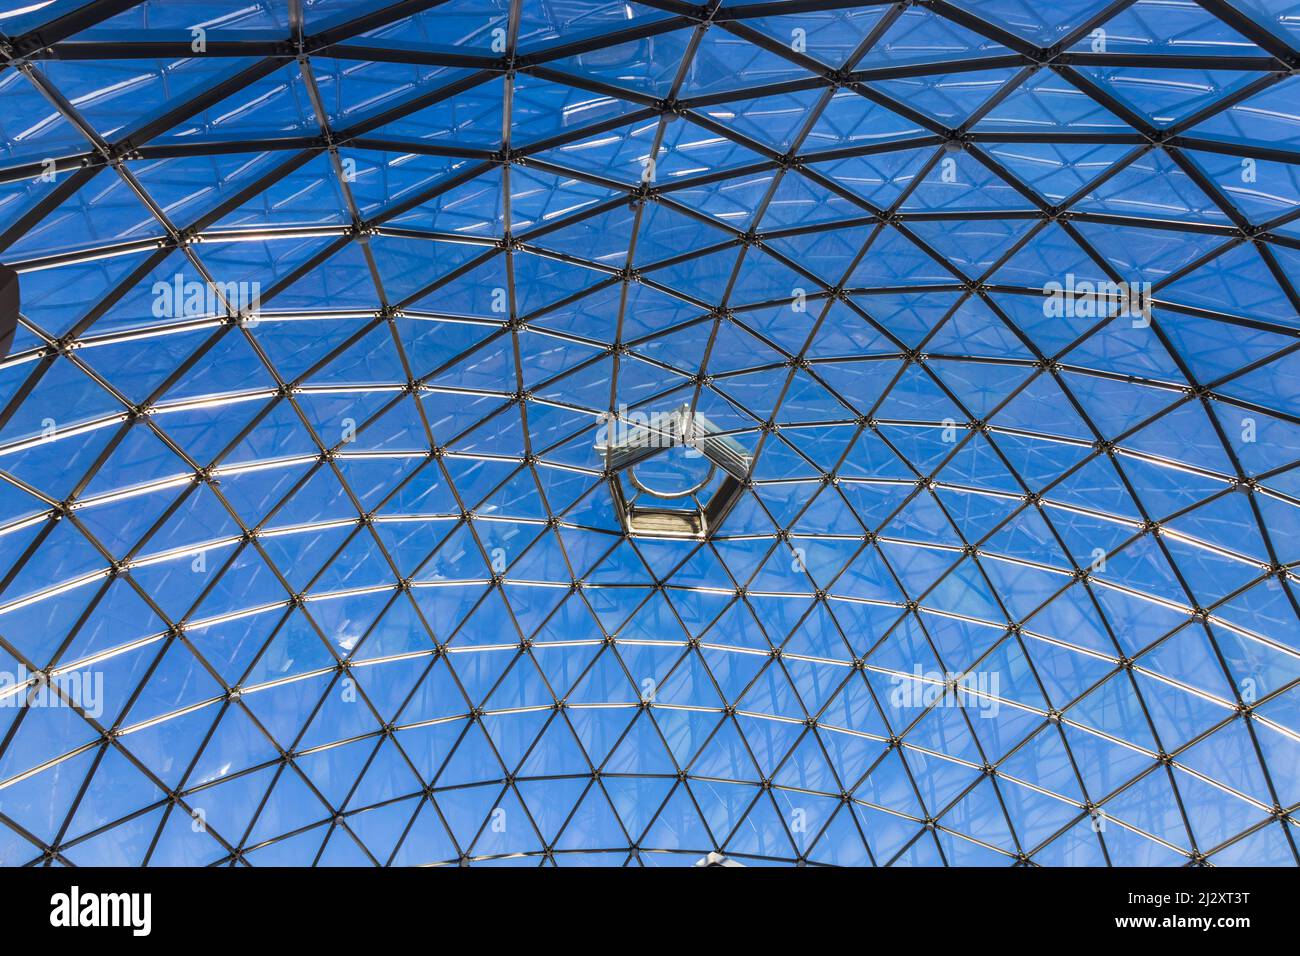 Das geschwungene Dach der strukturellen Glasfassade des modernen Architekturgebäudes Stockfoto